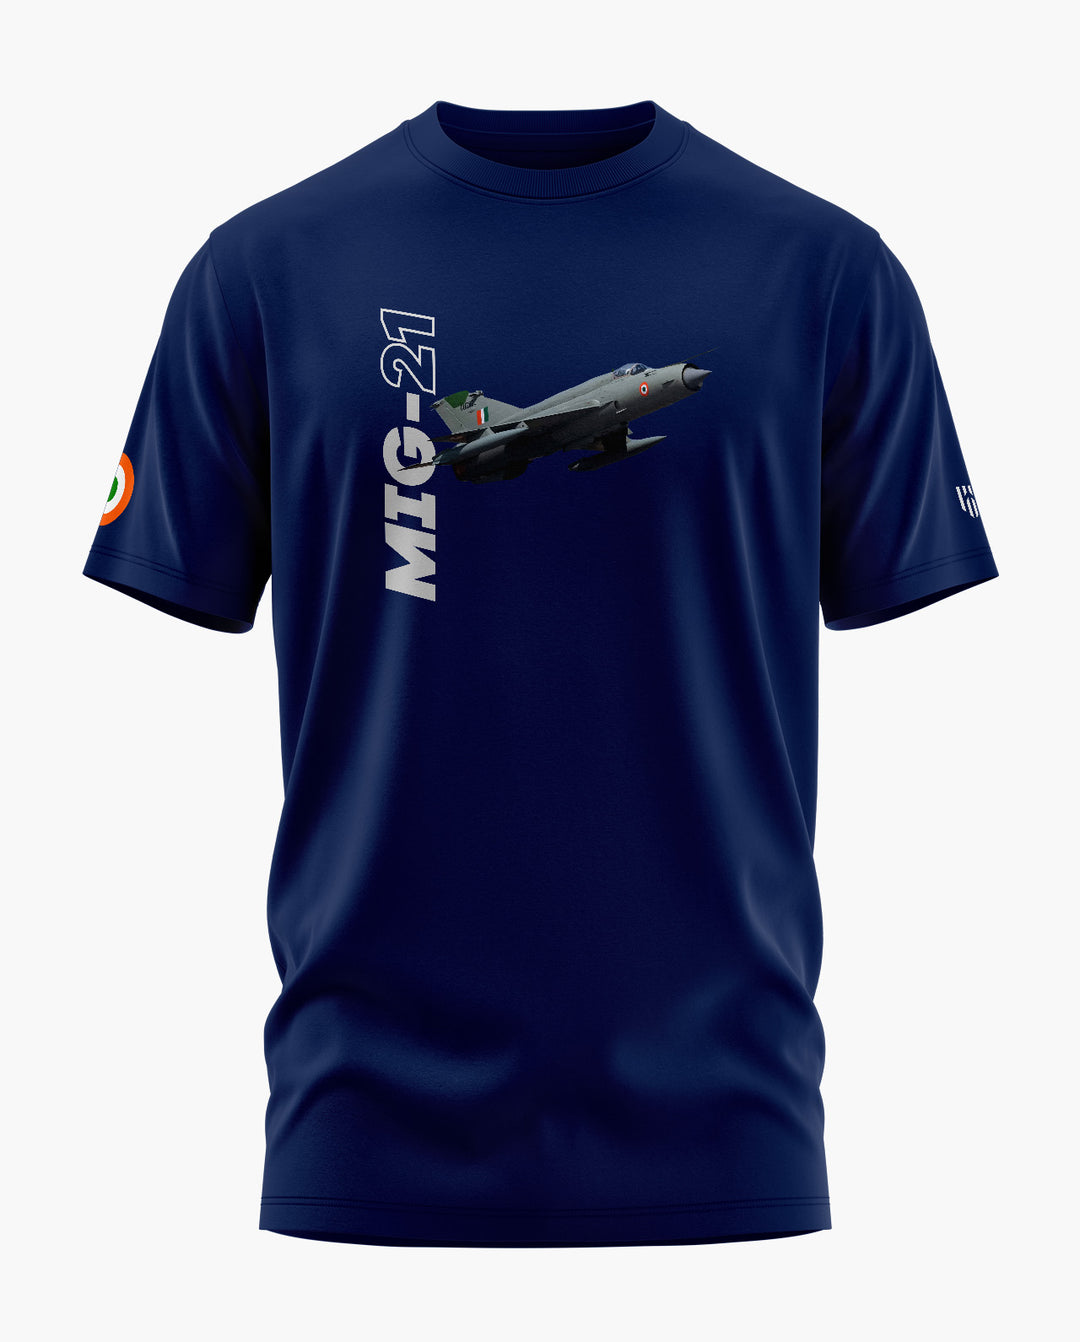 MiG-21 Thunderbird T-Shirt